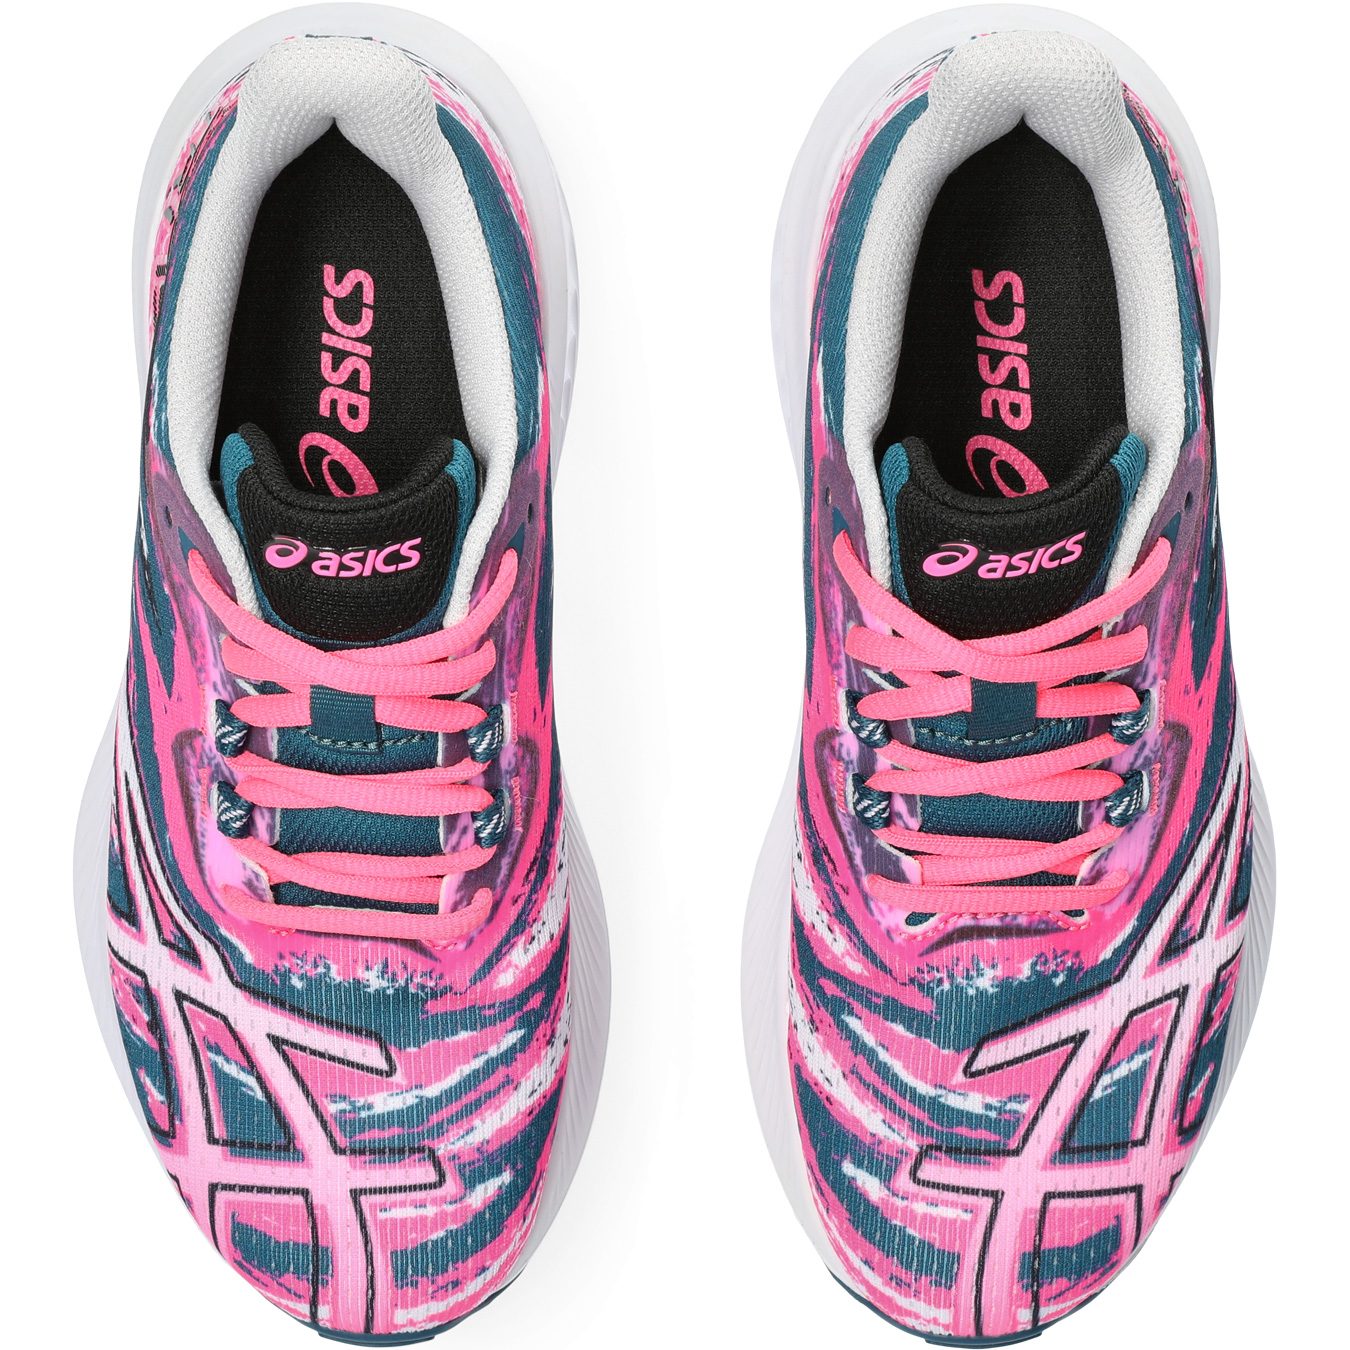 ASICS - Gel-Noosa TRI 15 Shoes pink GS Sport hot Shop Running Bittl Kids at